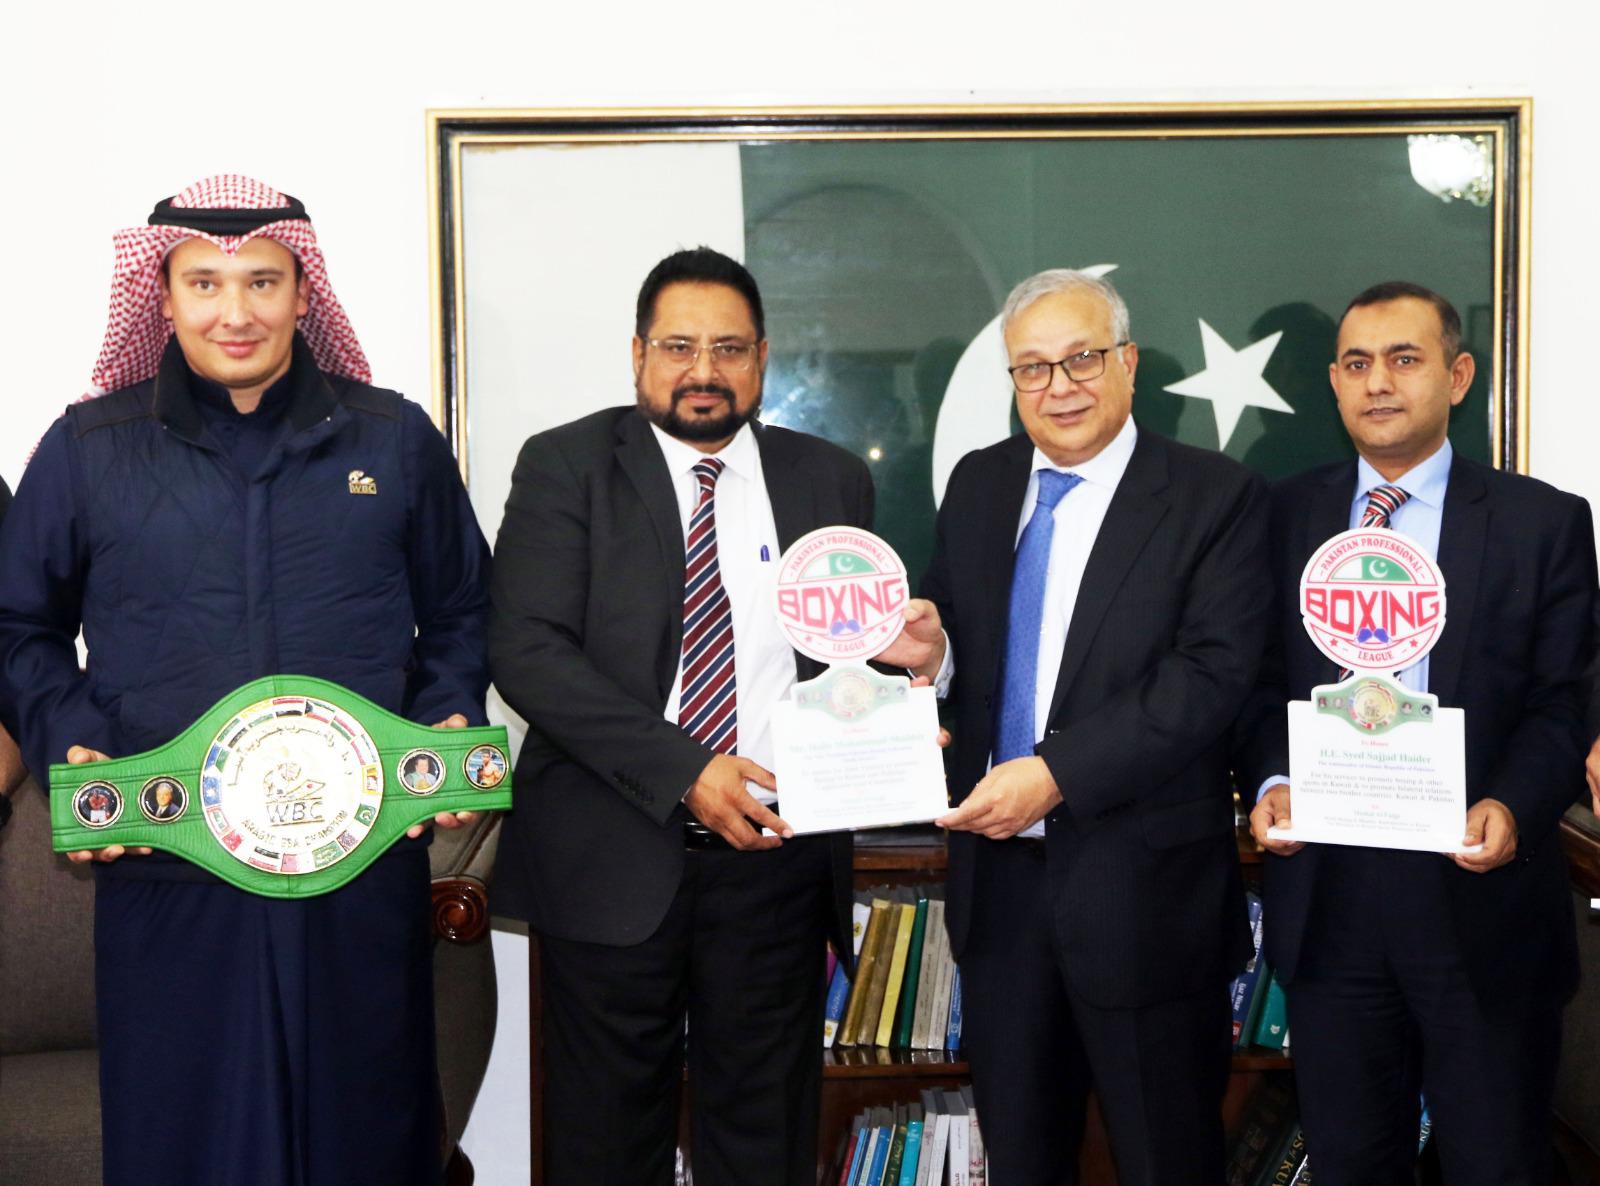 http://pakistanisinkuwait.com/images/boxing-kwt-embassy.jpg